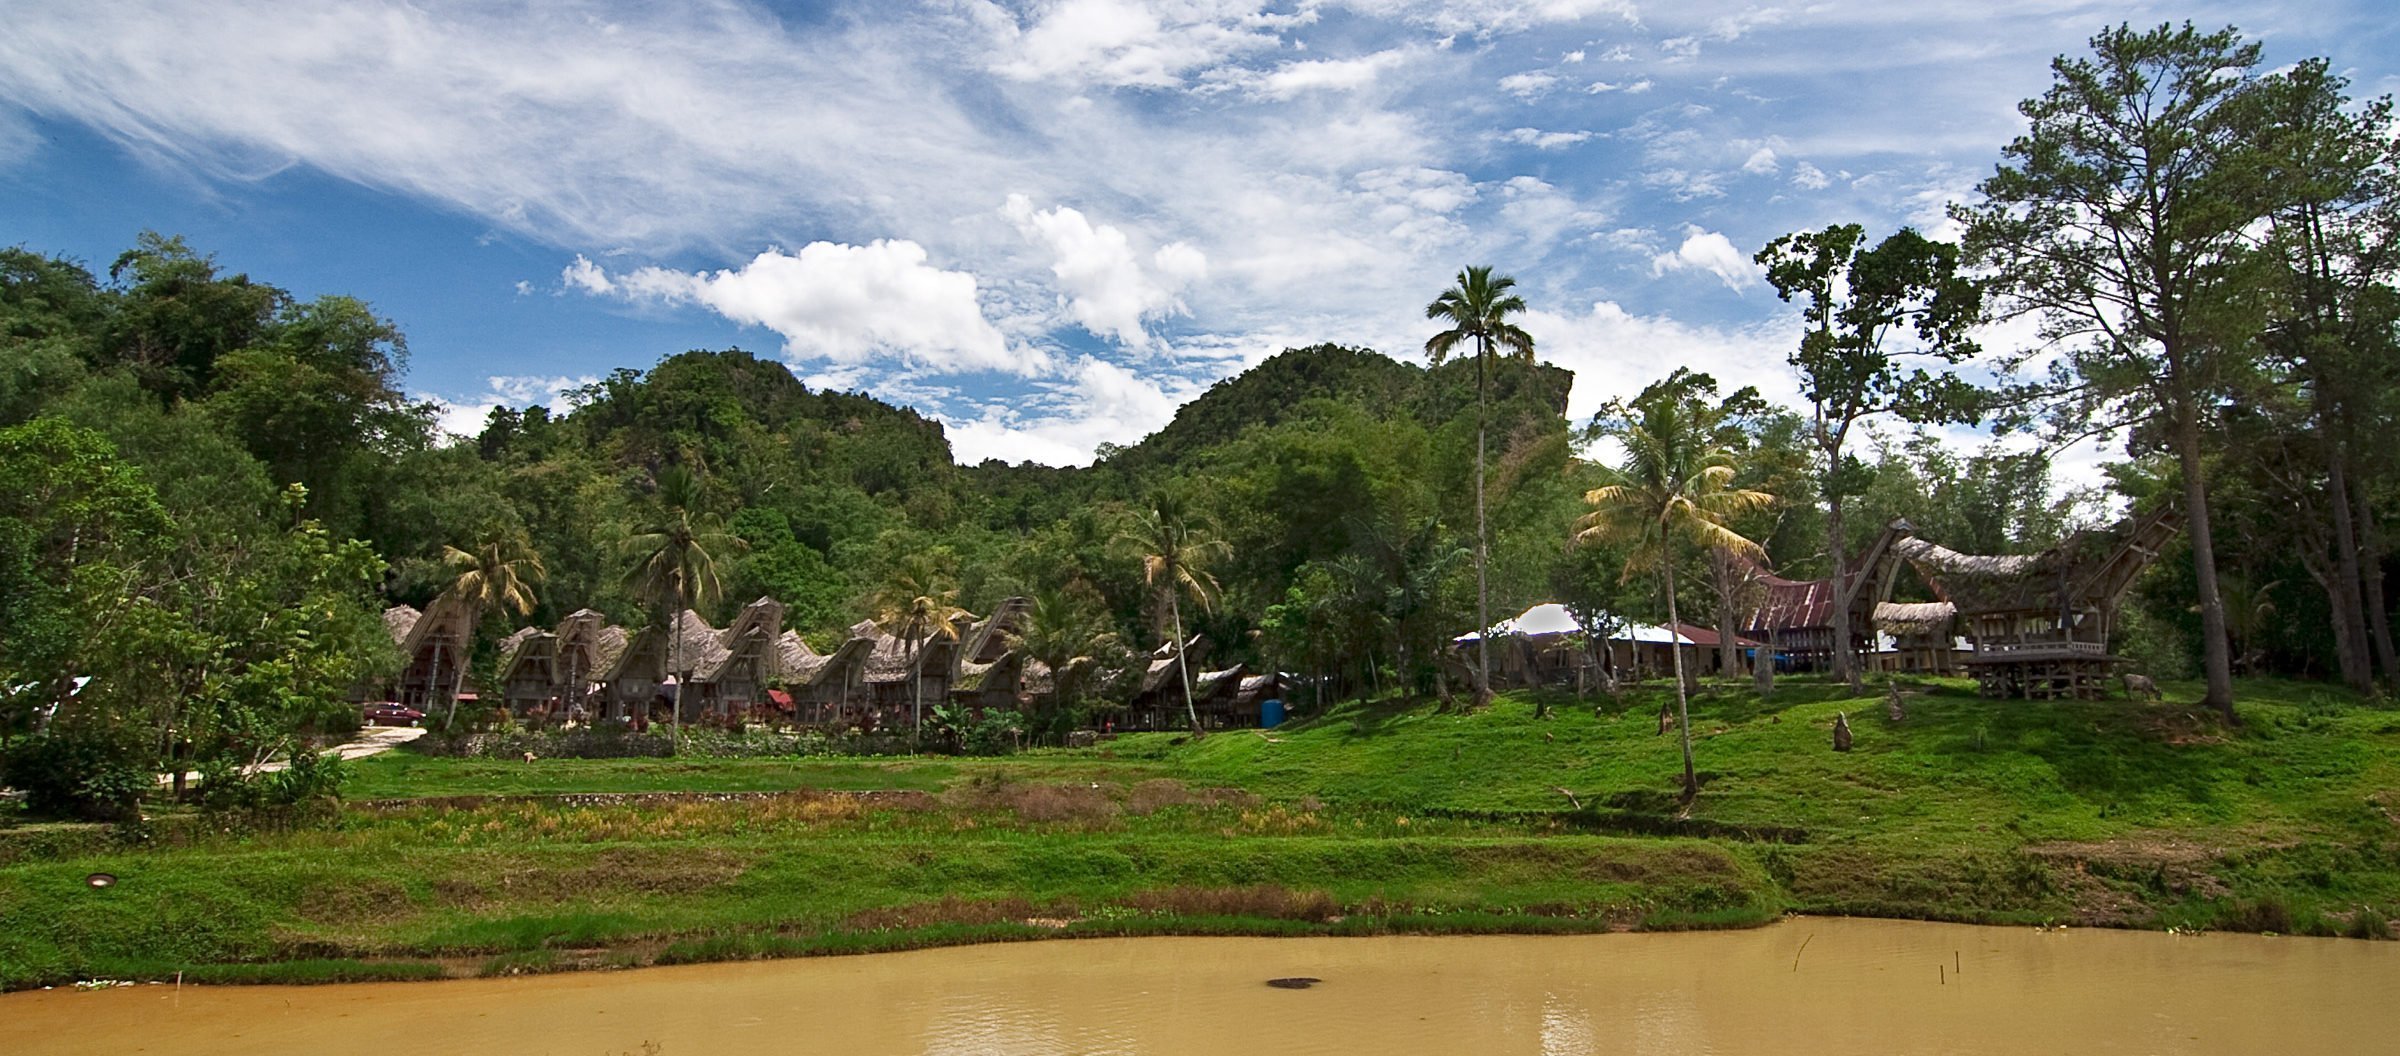 Toraja Village with Tongkonan